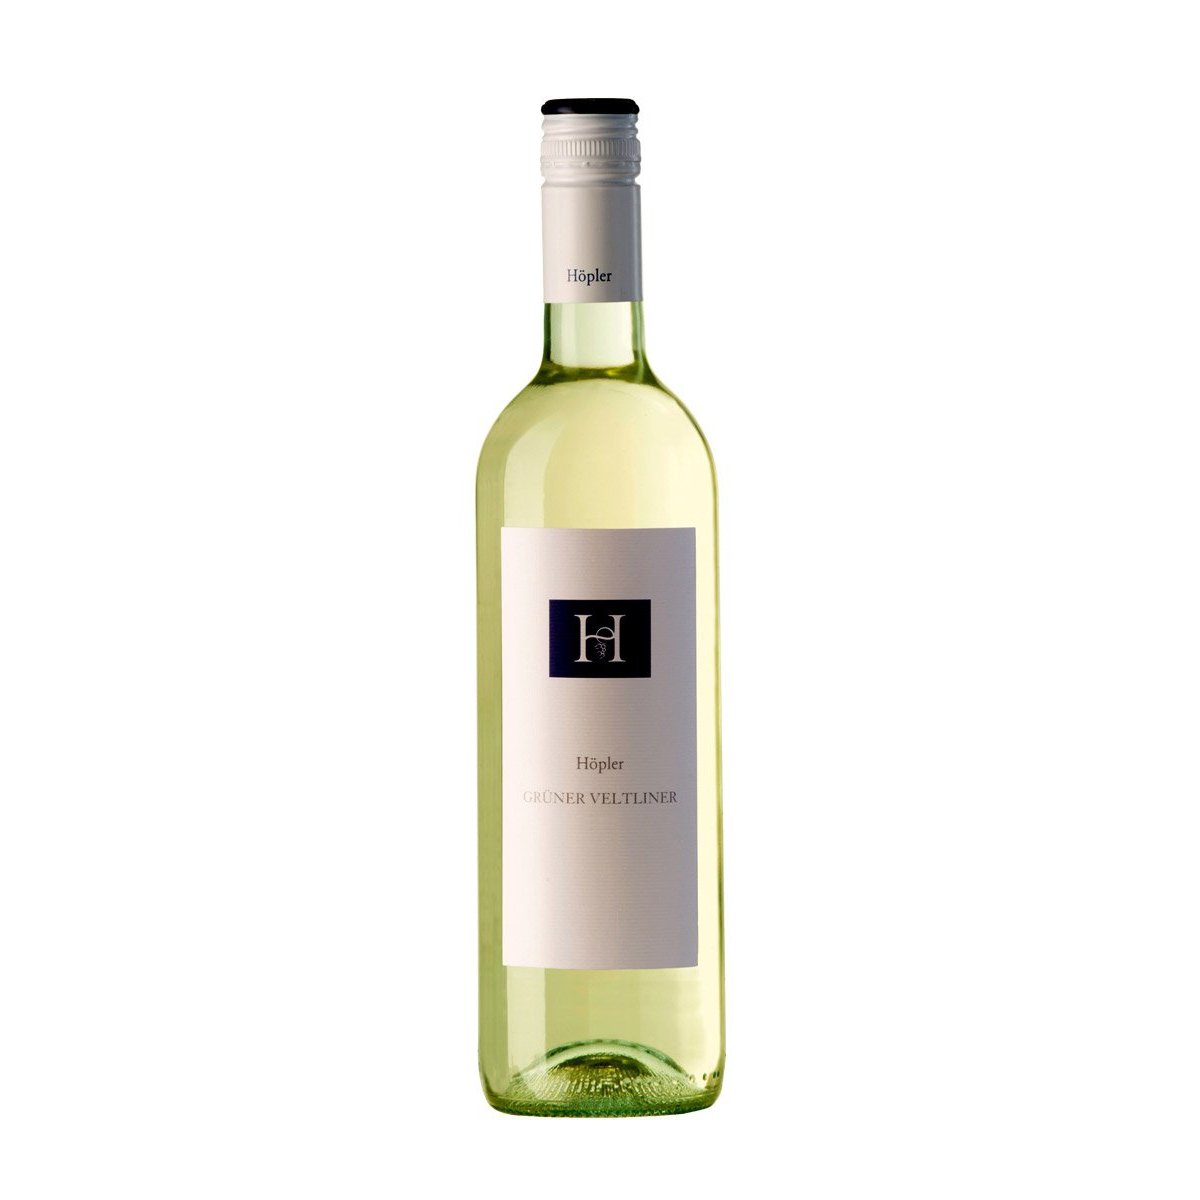 Hopler Gruner Veltliner-White Wine-9005487260030-Fountainhall Wines